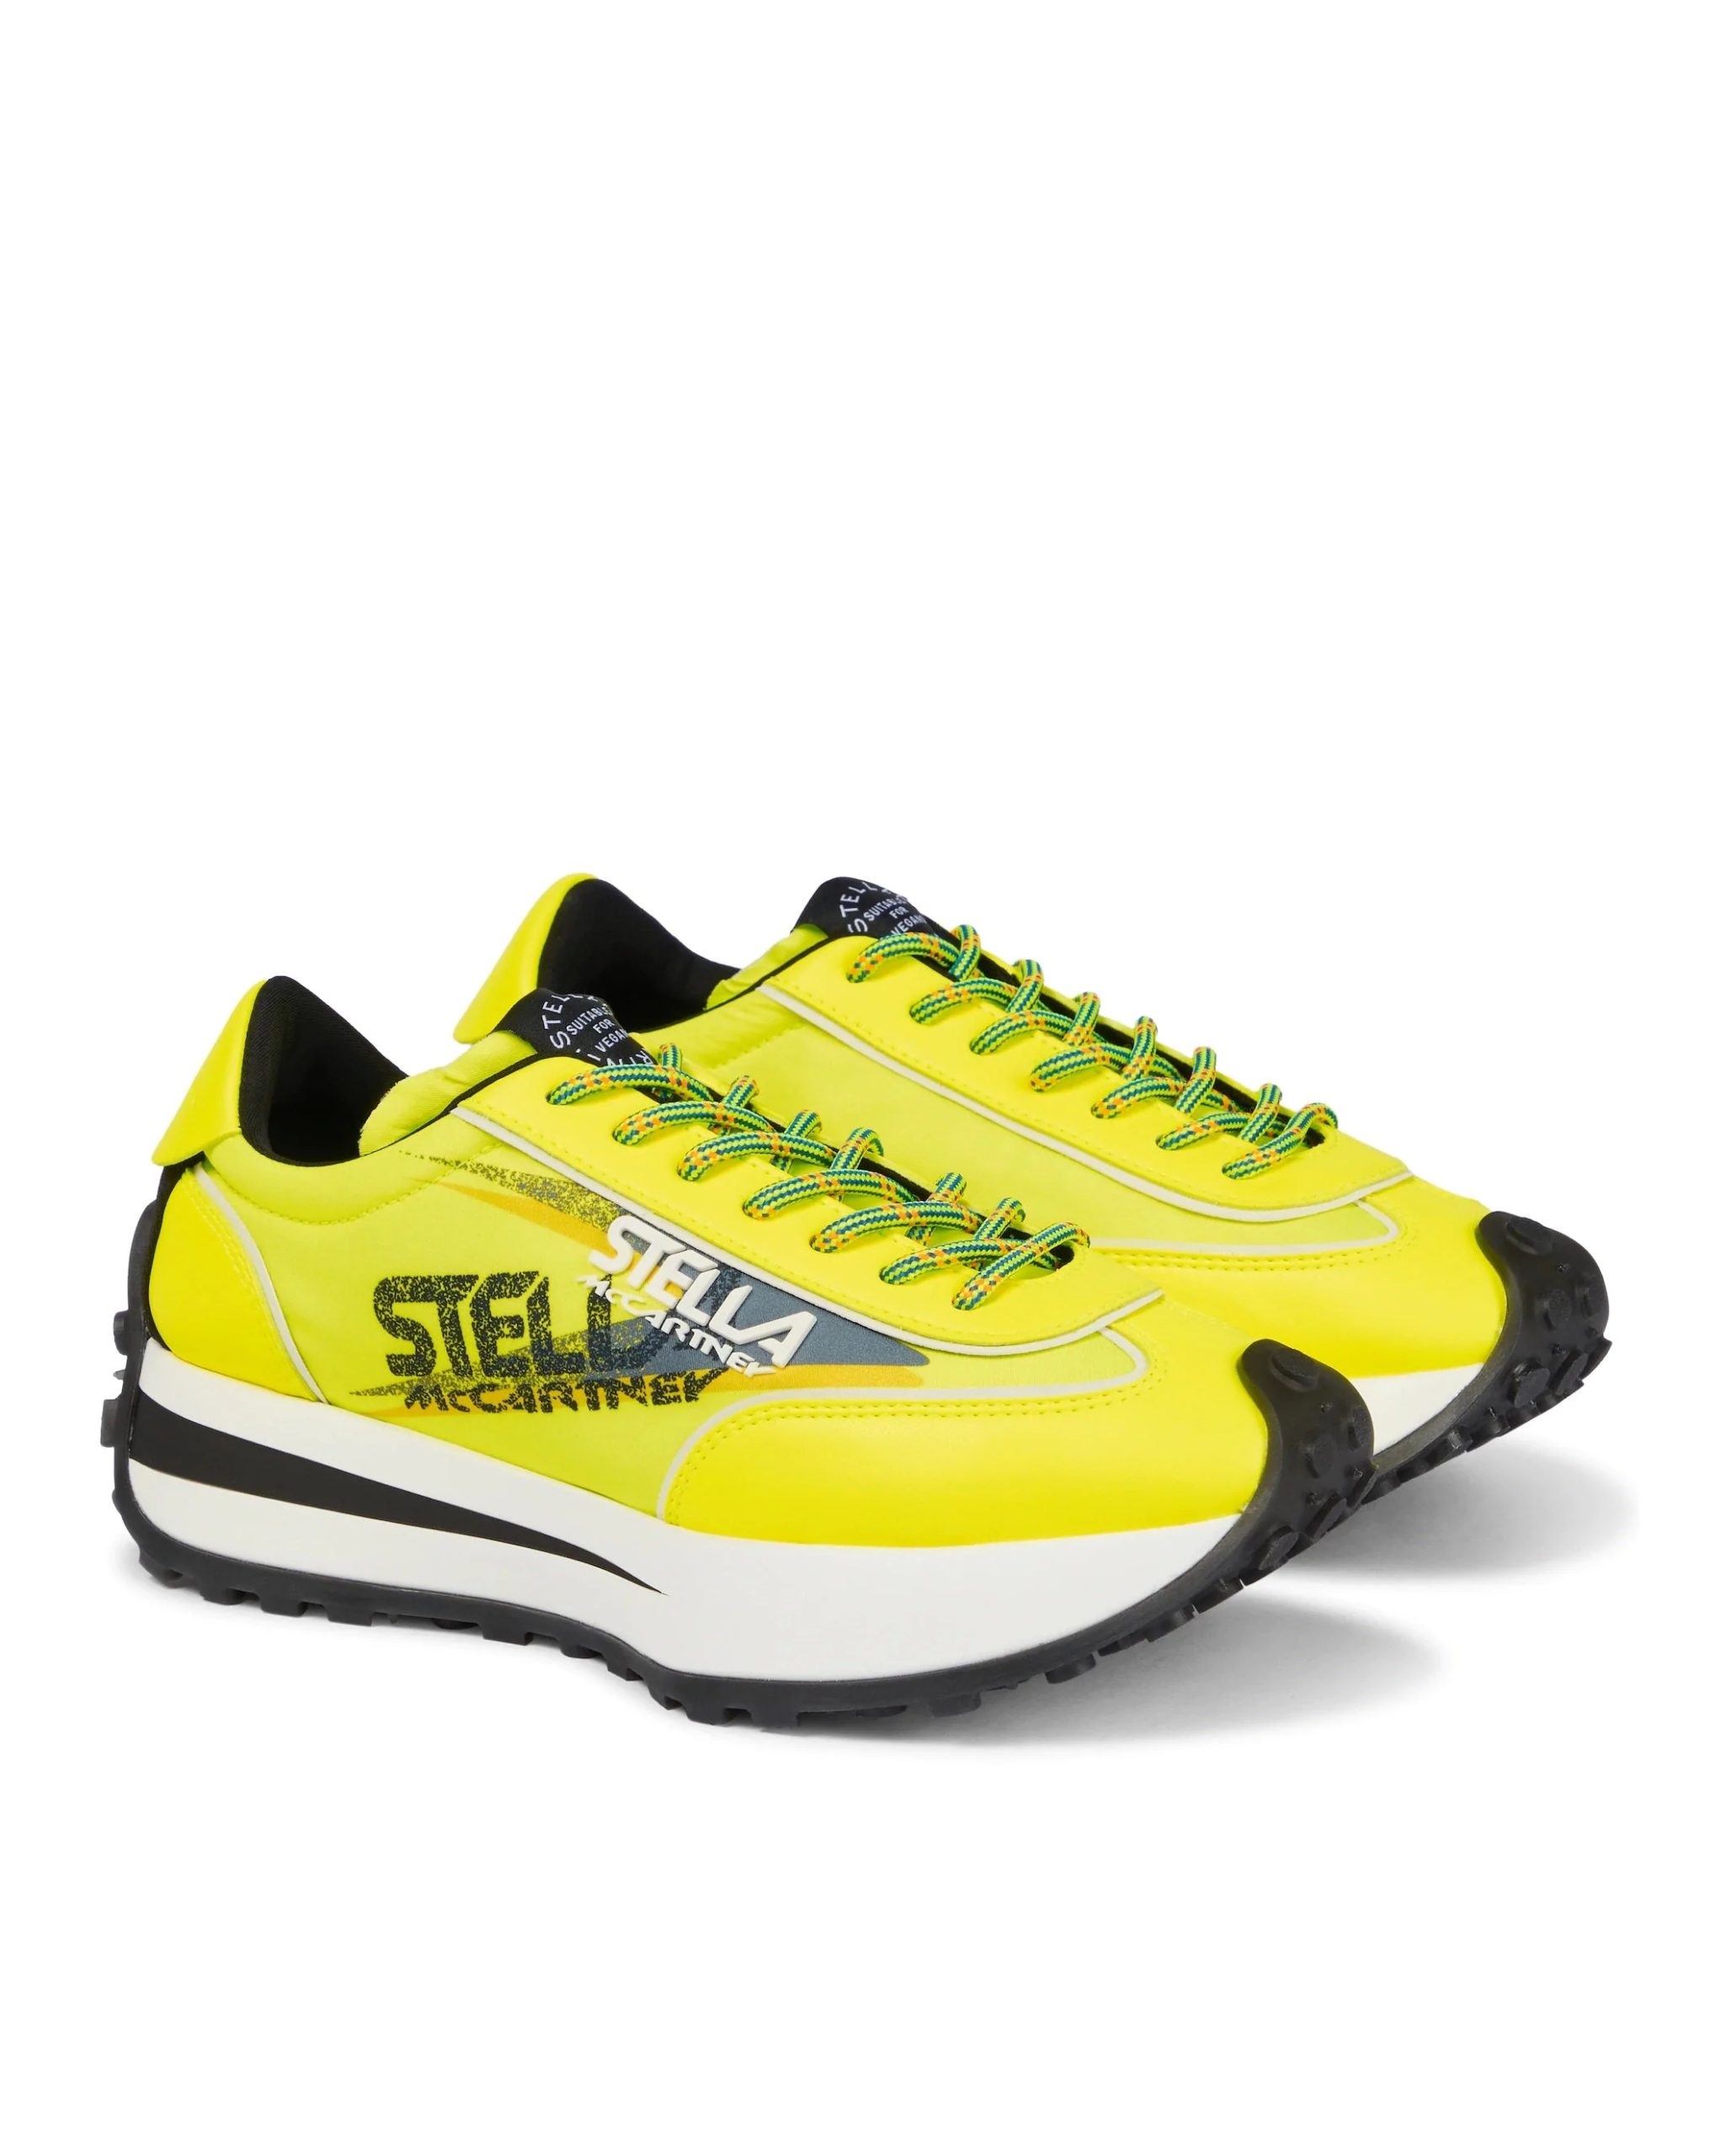 Stella McCartney Reclypse Sneakers In Yellow/Green